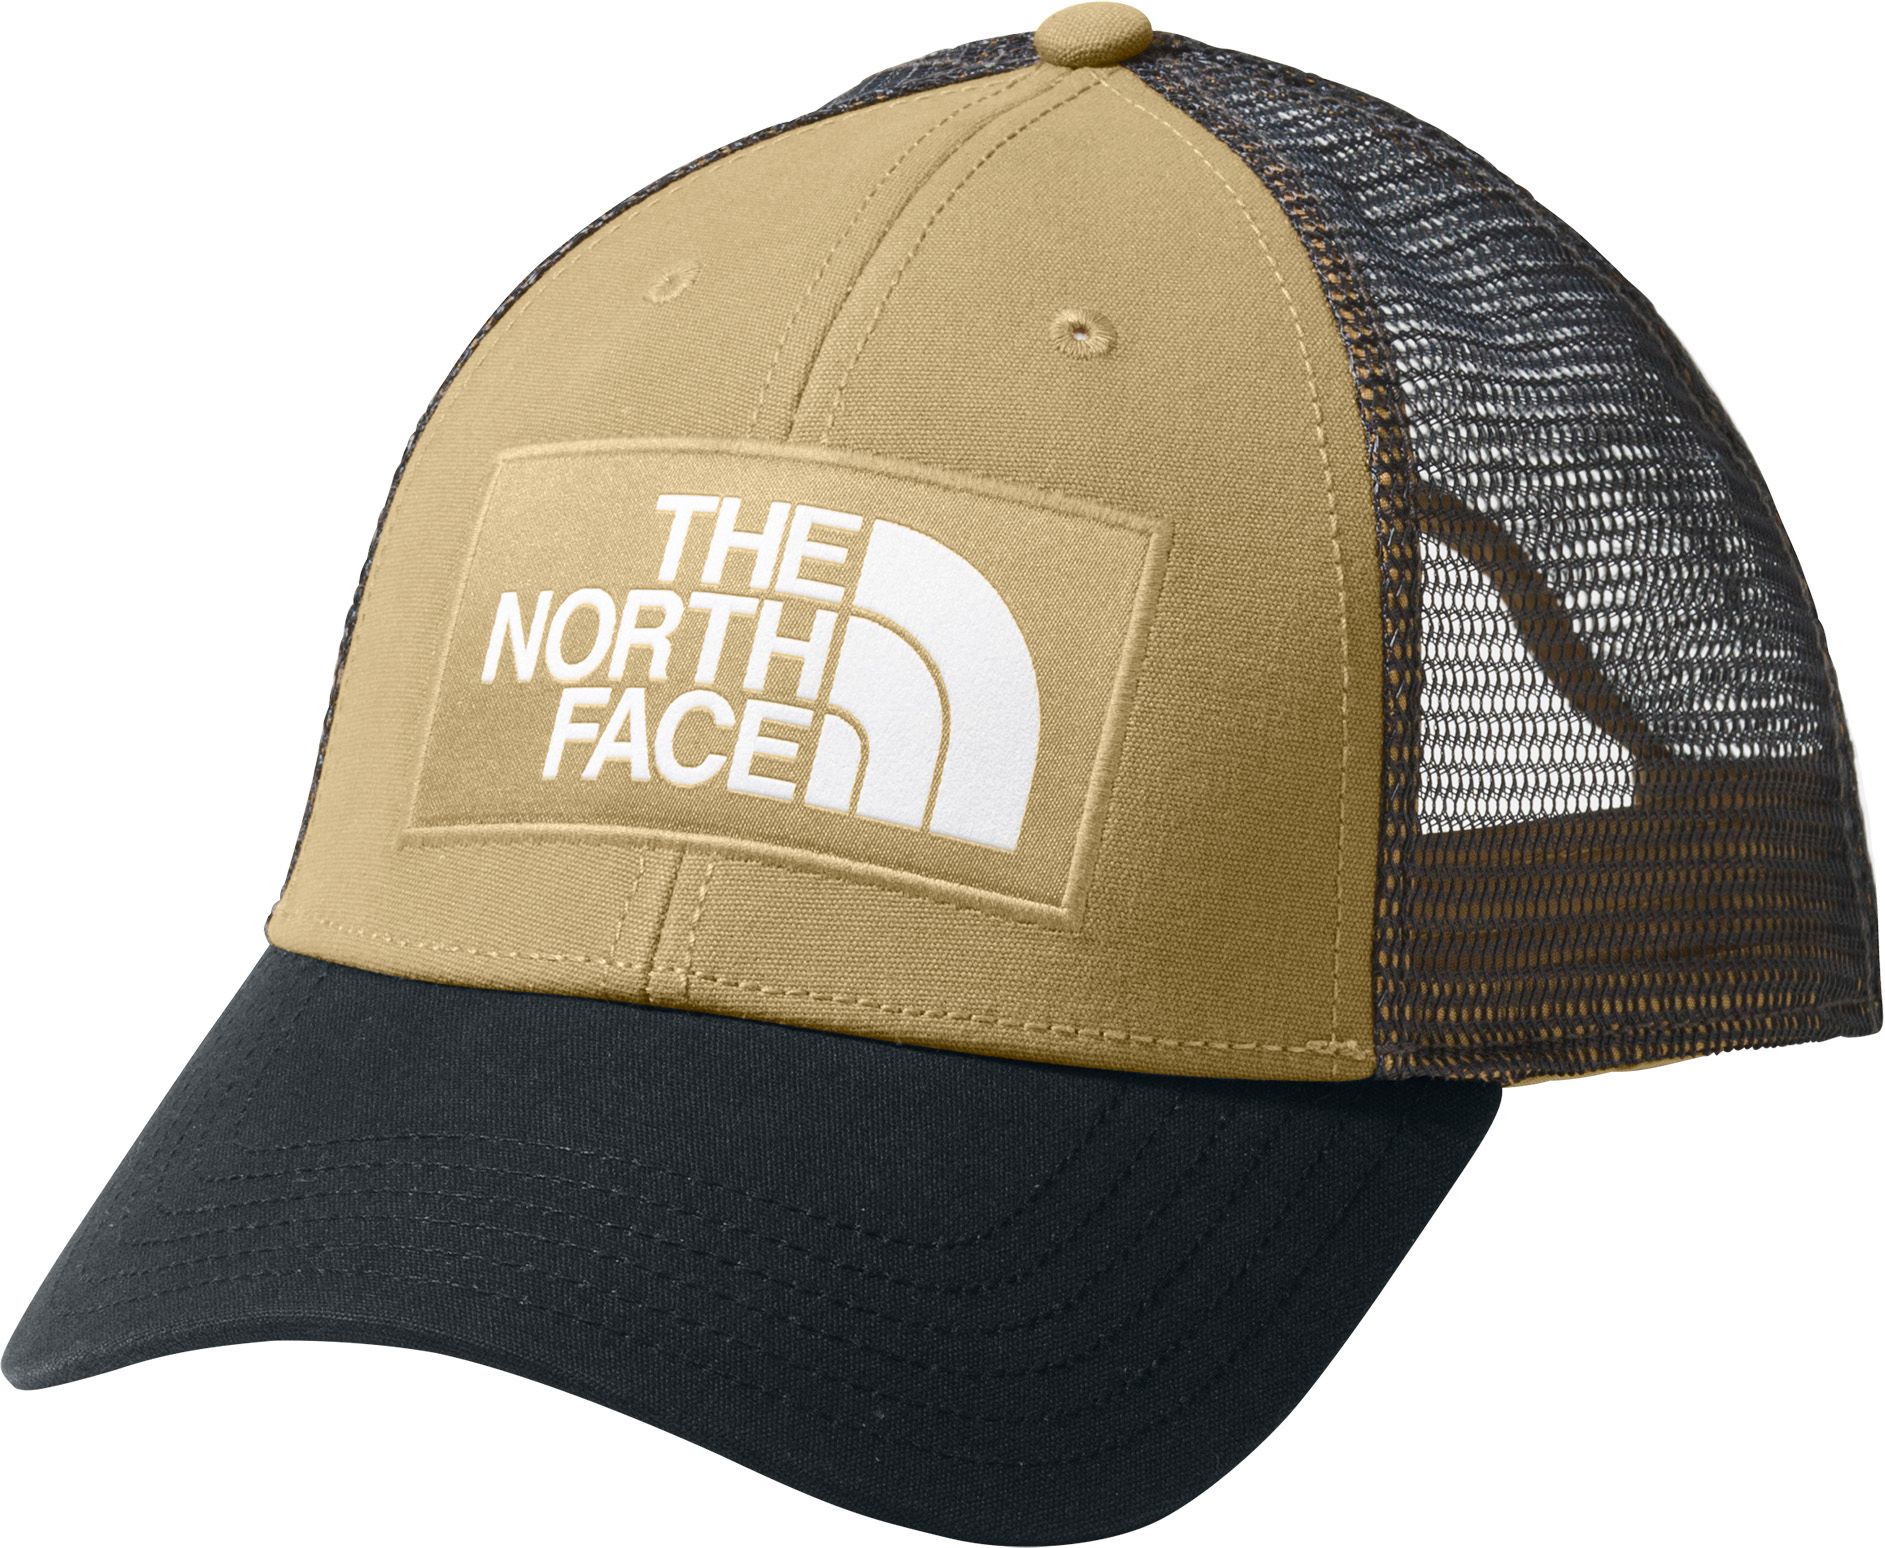 mudder trucker cap north face